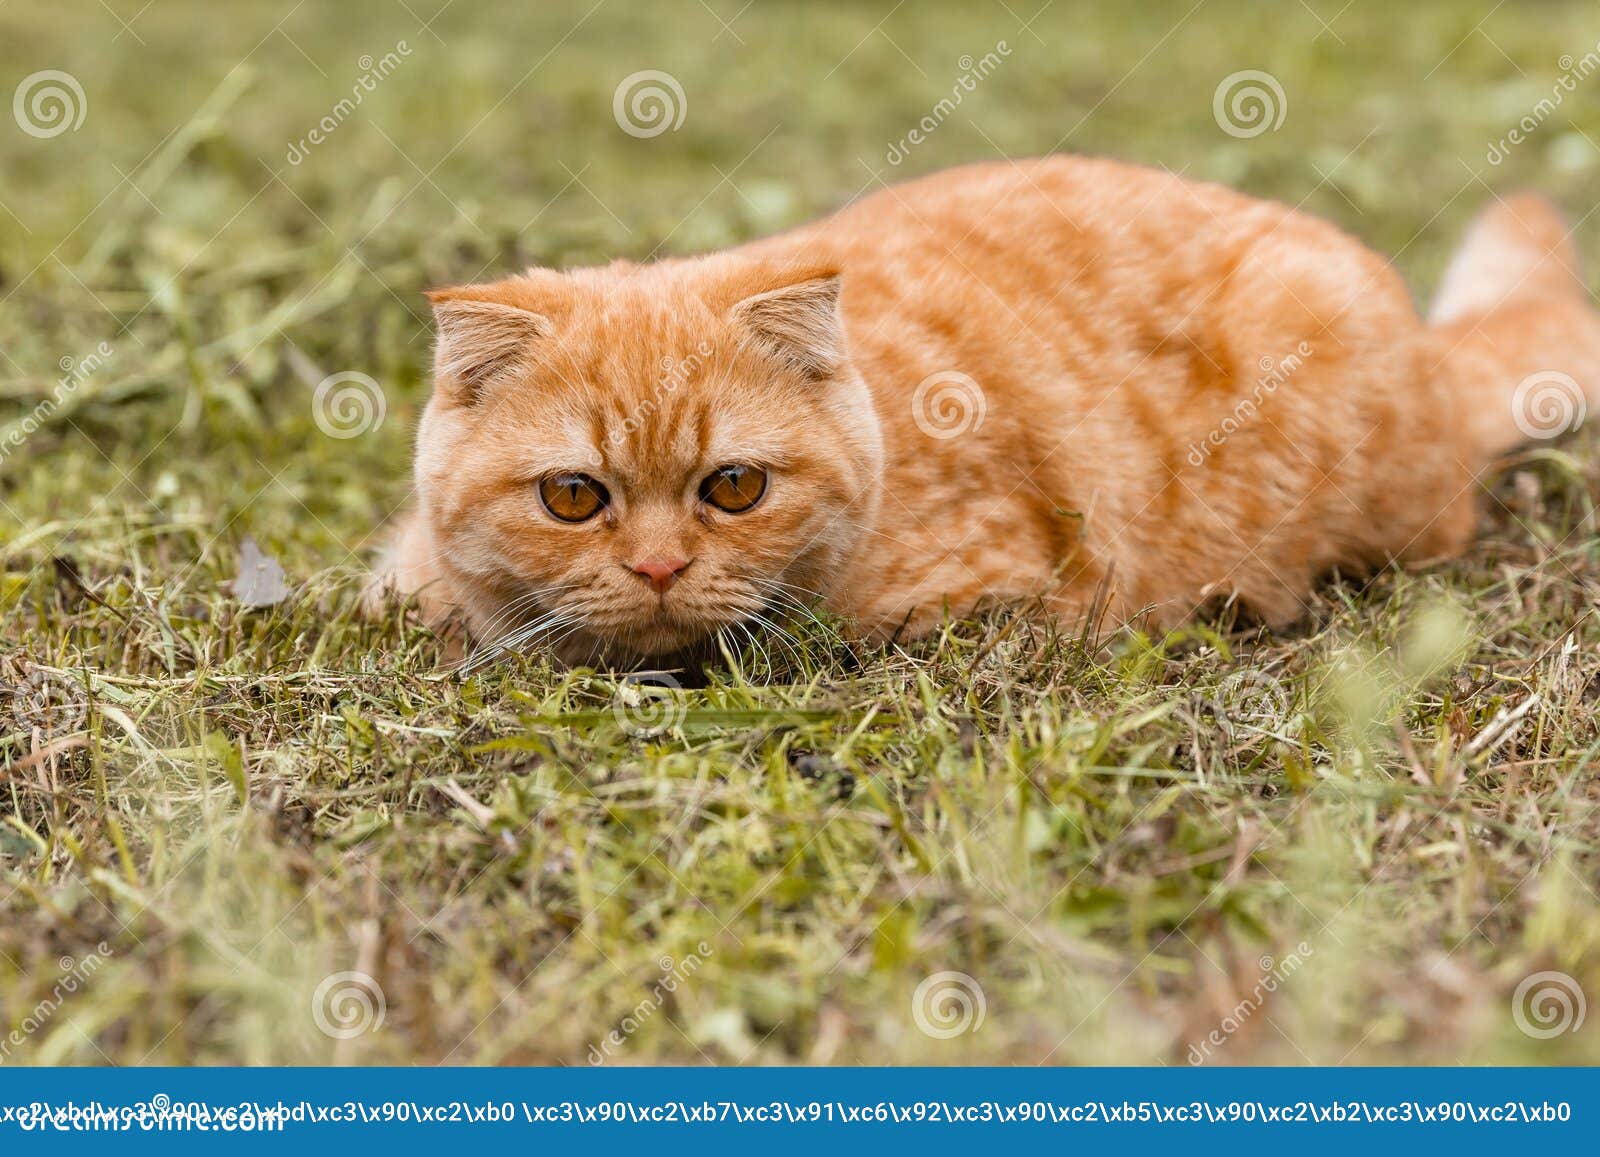 Mijnenveld personeelszaken Stereotype Portret Van Een Klein Ginger British Kitten Met. De Kat Loopt in De Tuin.  Britse Rode Kat 5 Maanden Oud Stock Afbeelding - Image of kapsel,  binnenlands: 229032871